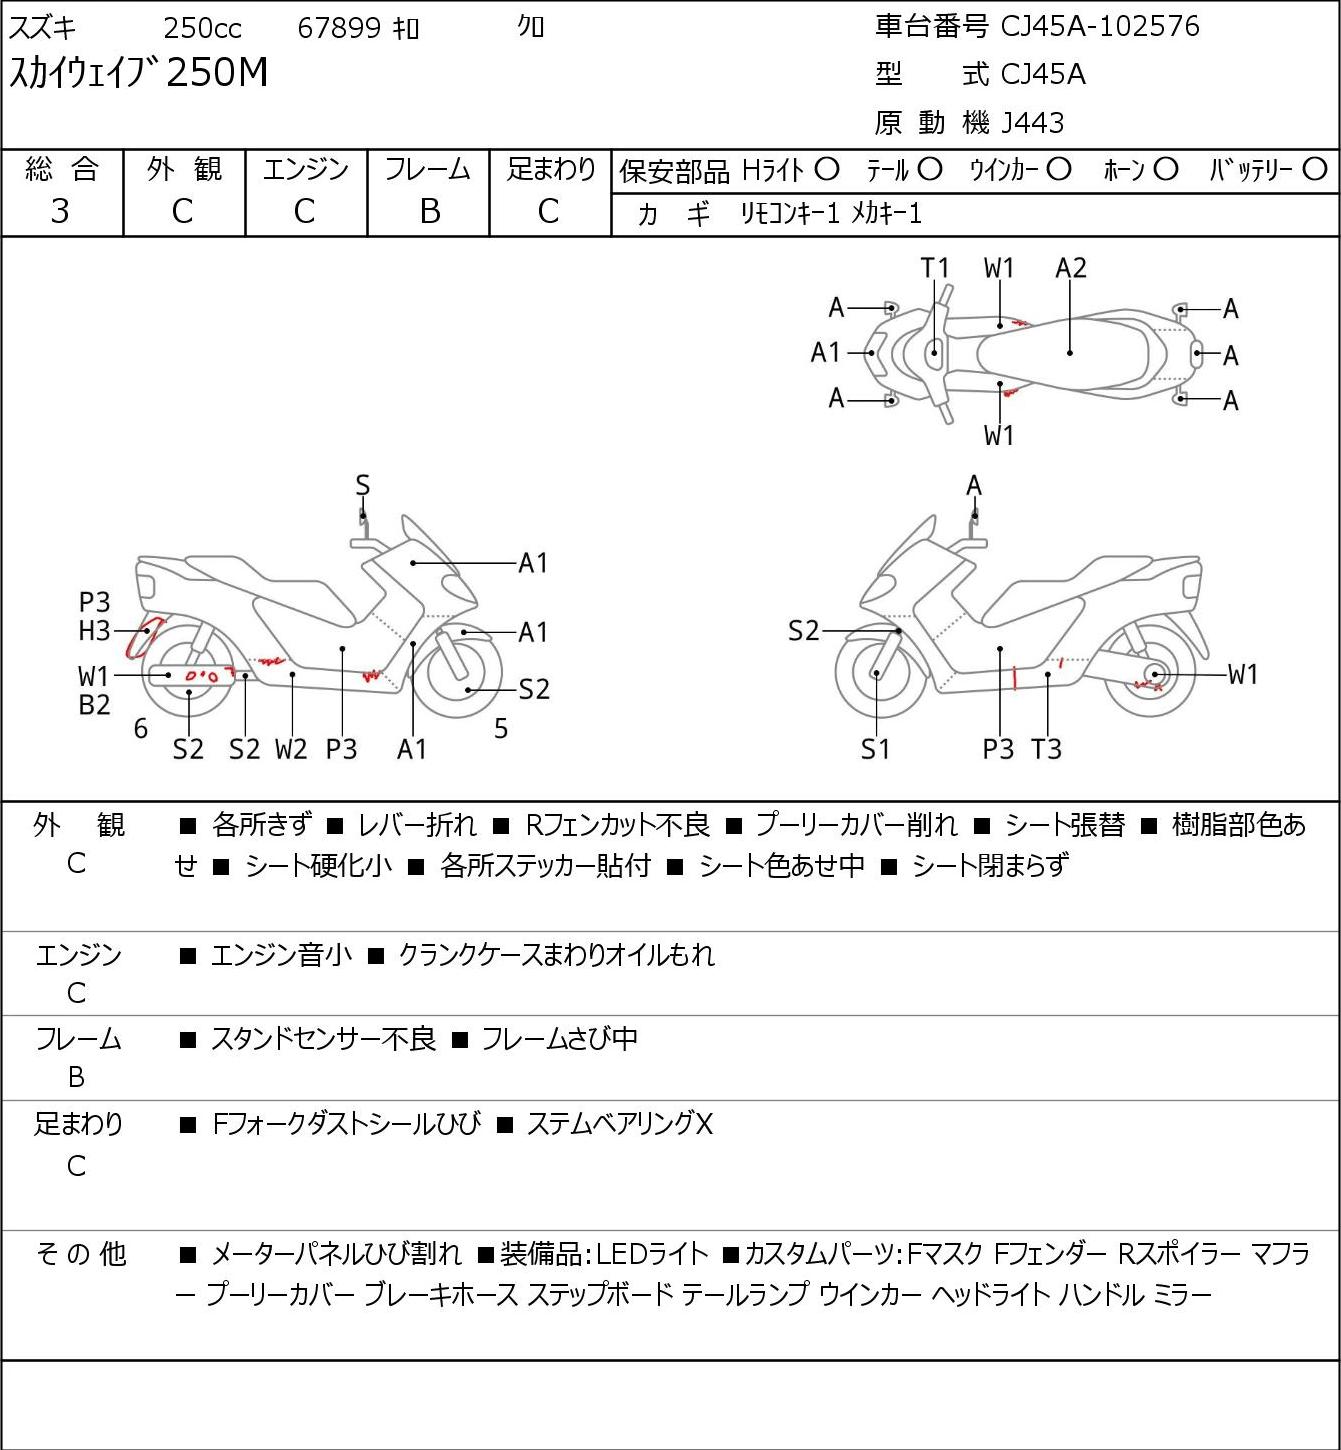 Suzuki SKYWAVE 250M CJ45A - купить недорого